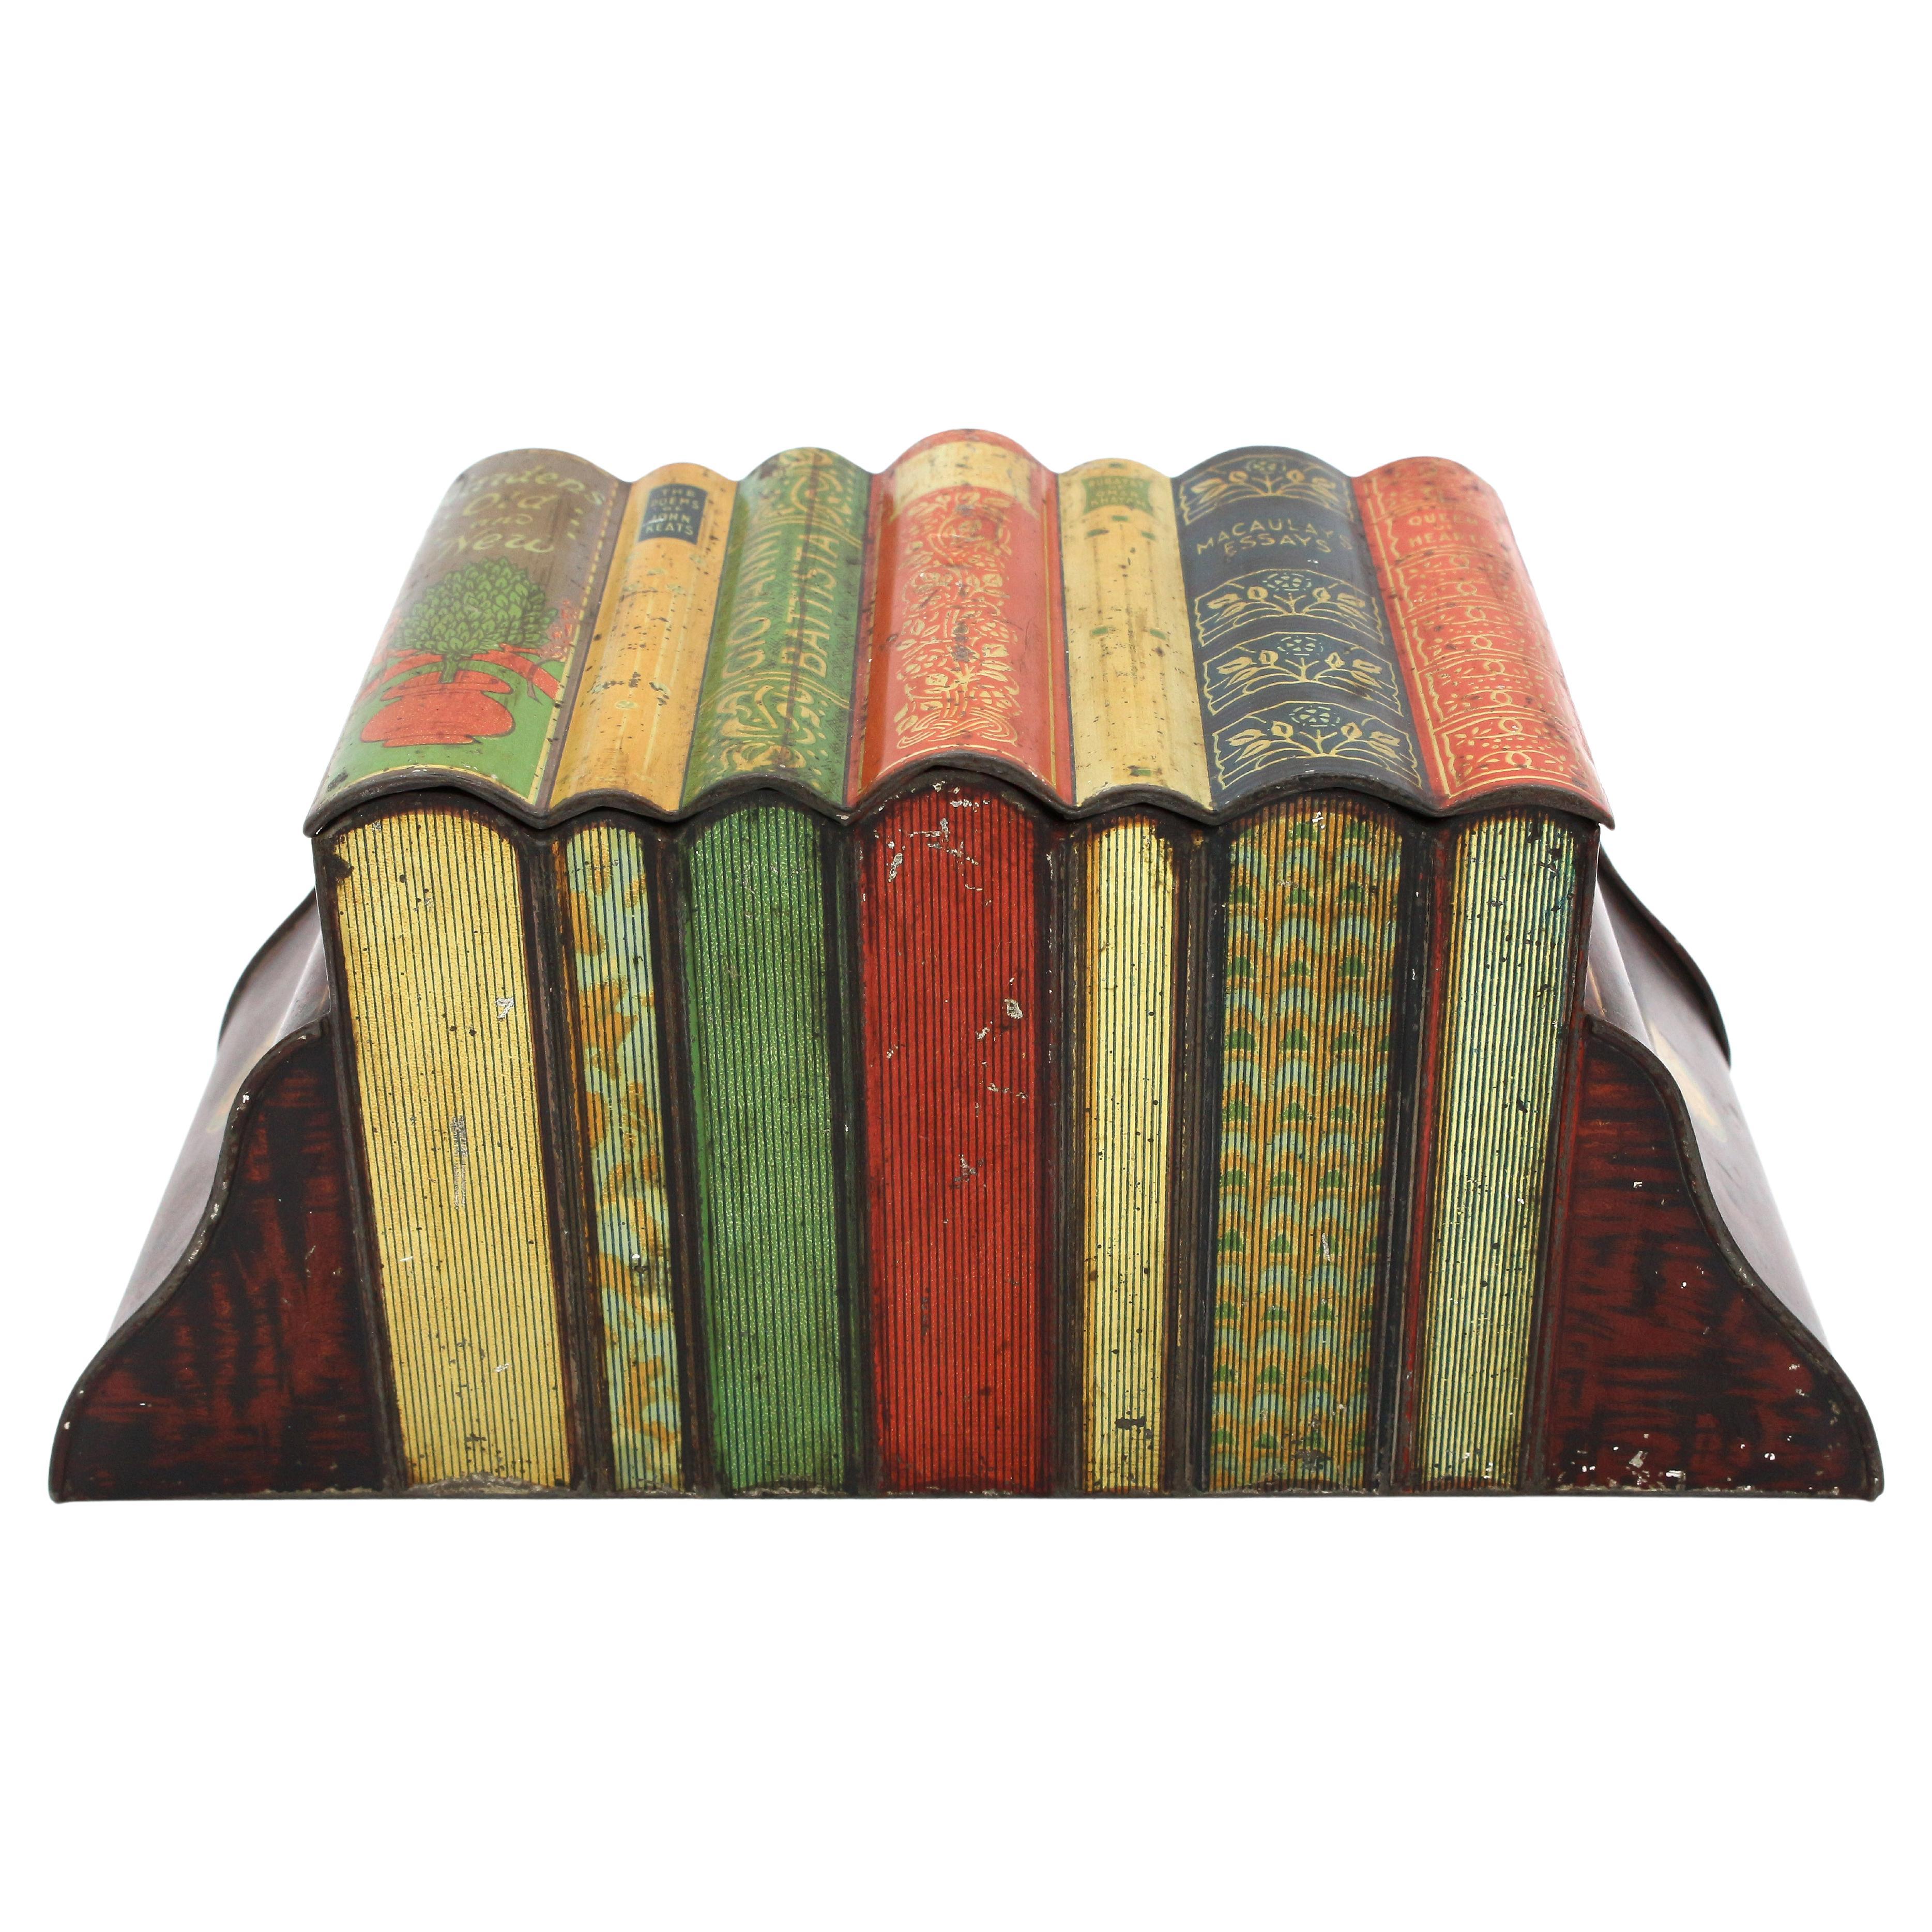 Biskuit Zinn in Buch- und Buchstützenform aus dem frühen 20. Jahrhundert von Huntley & Palmers